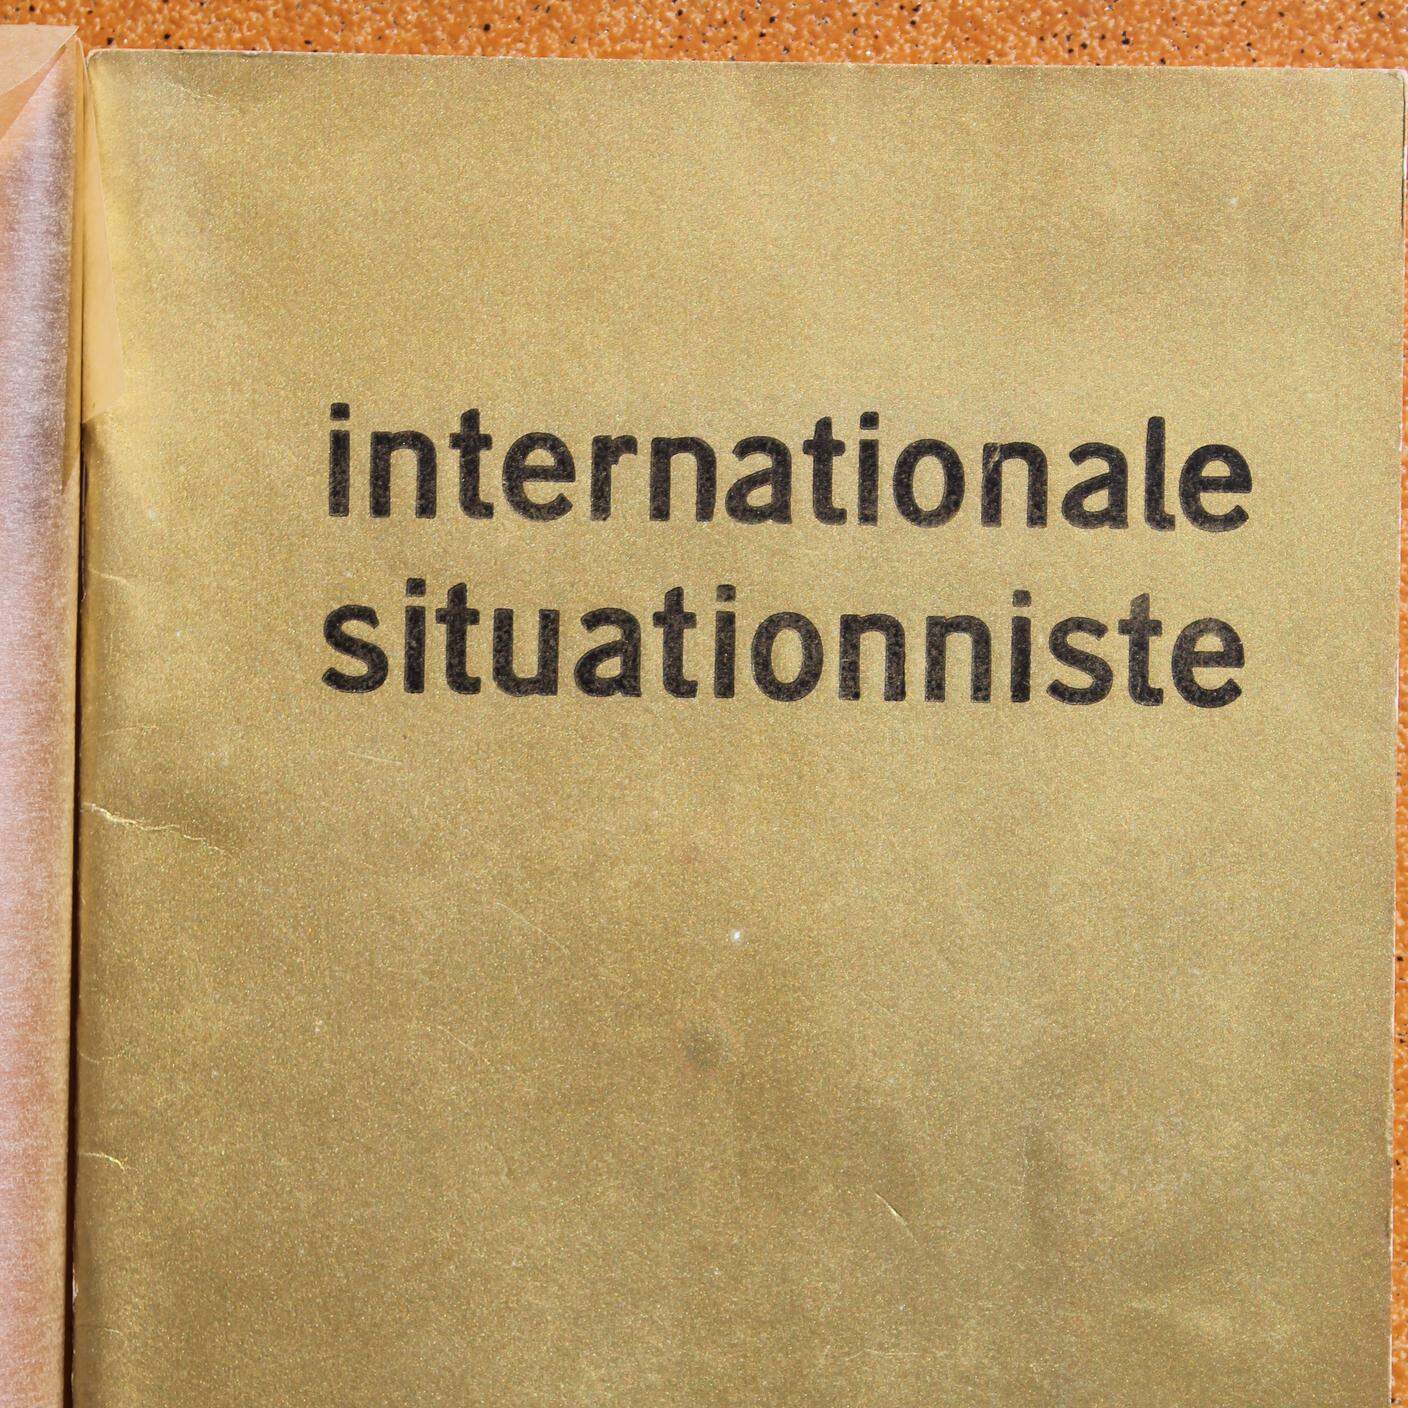 Internazionale Situazionista